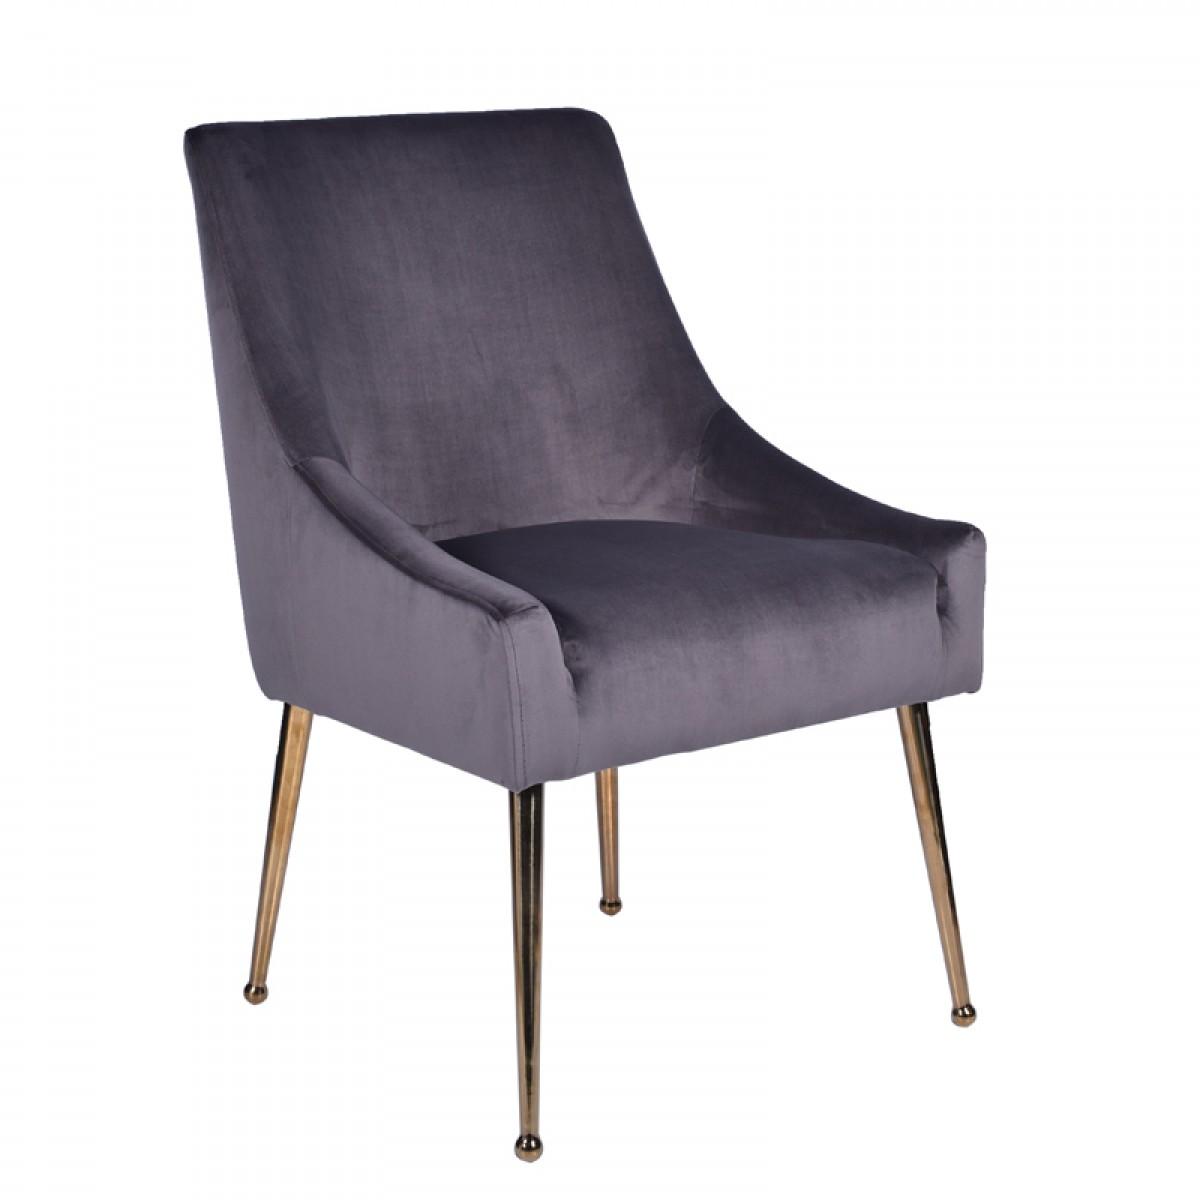 

    
Glam Grey Velvet & Gold Dining Chair Set of 2 VIG Modrest Castana Modern
